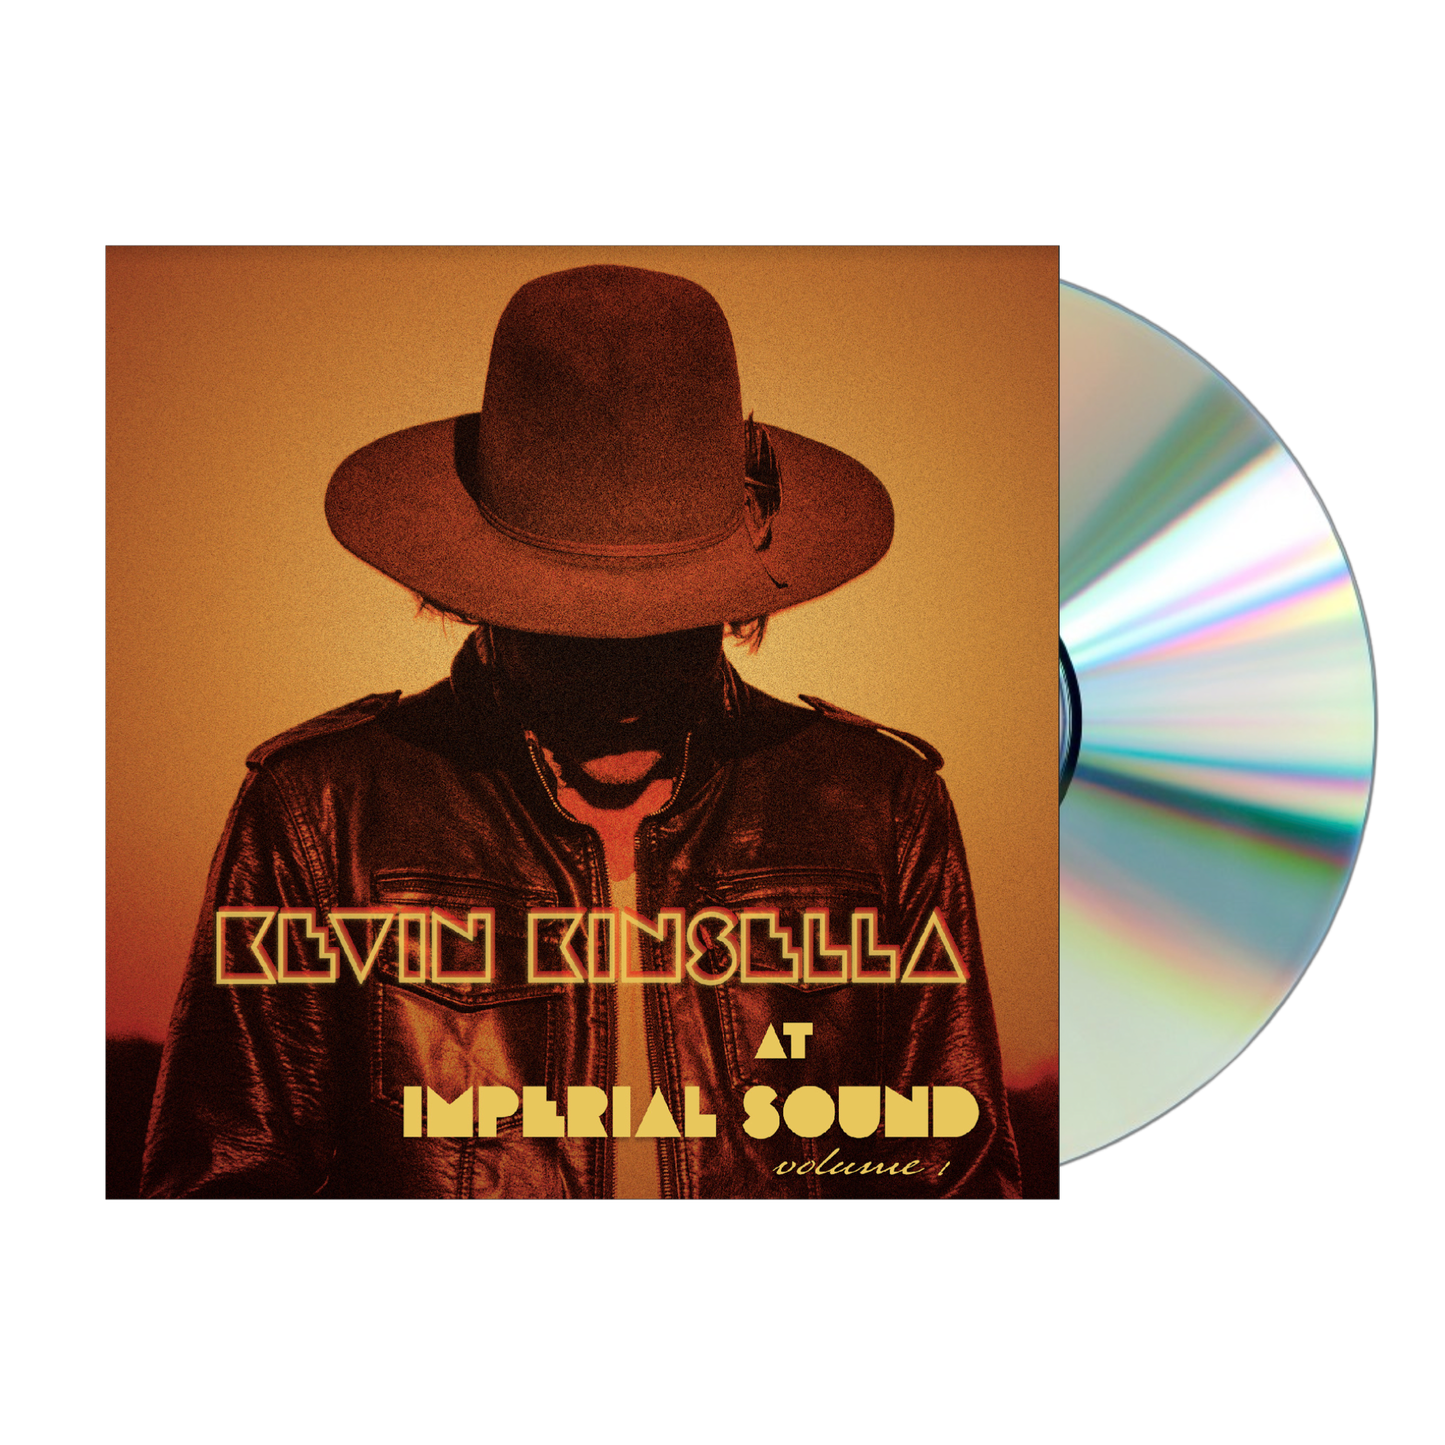 Kevin Kinsella - At Imperial Sound, Vol. 1 CD